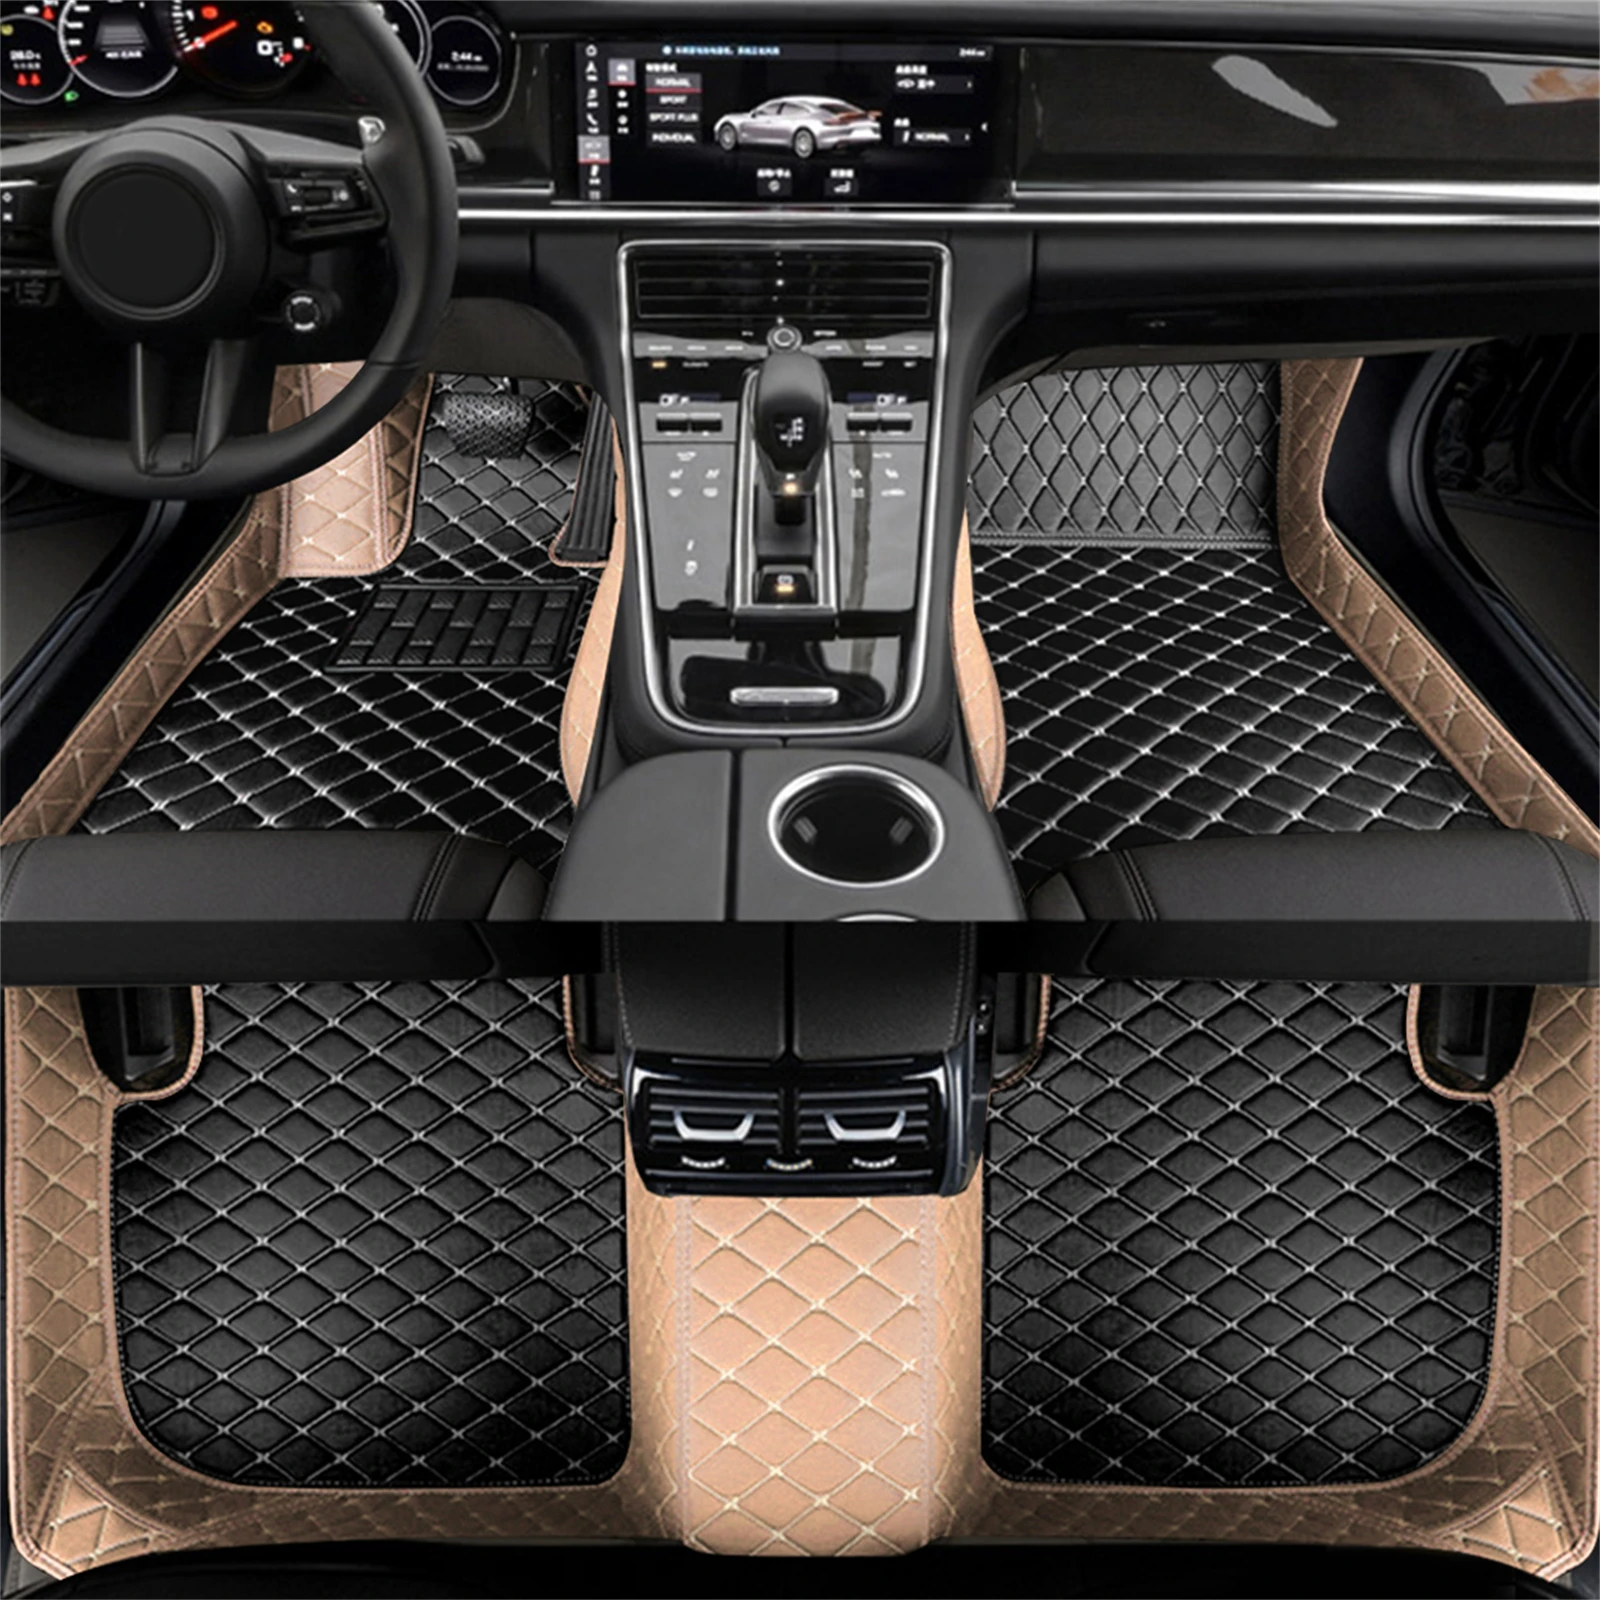 Artificial de Cuero de encargo del Coche alfombras de Piso para BMW F20 1 Serie de 4 Puertas 2011-2019 Año Detalles del Interior de los Accesorios del Coche de la Alfombra Imagen 5